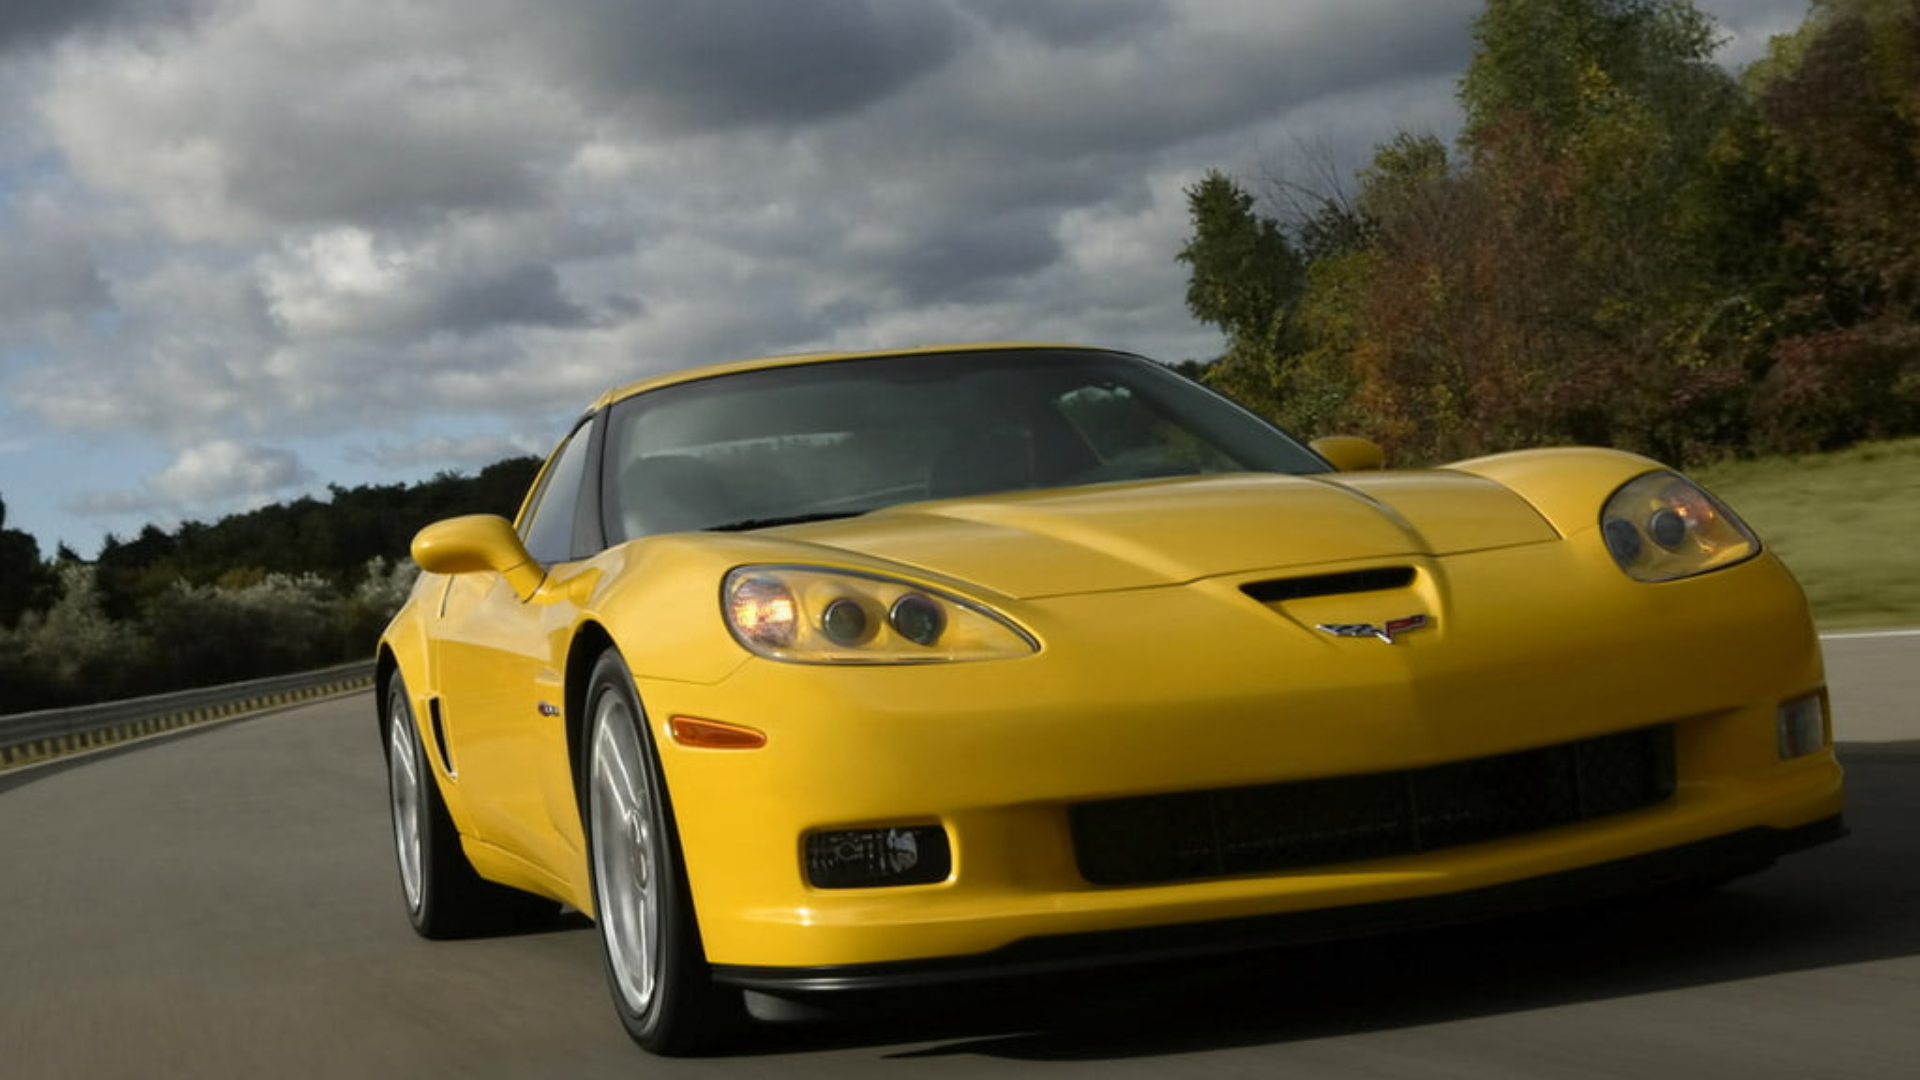 2006 Corvette Wallpapers